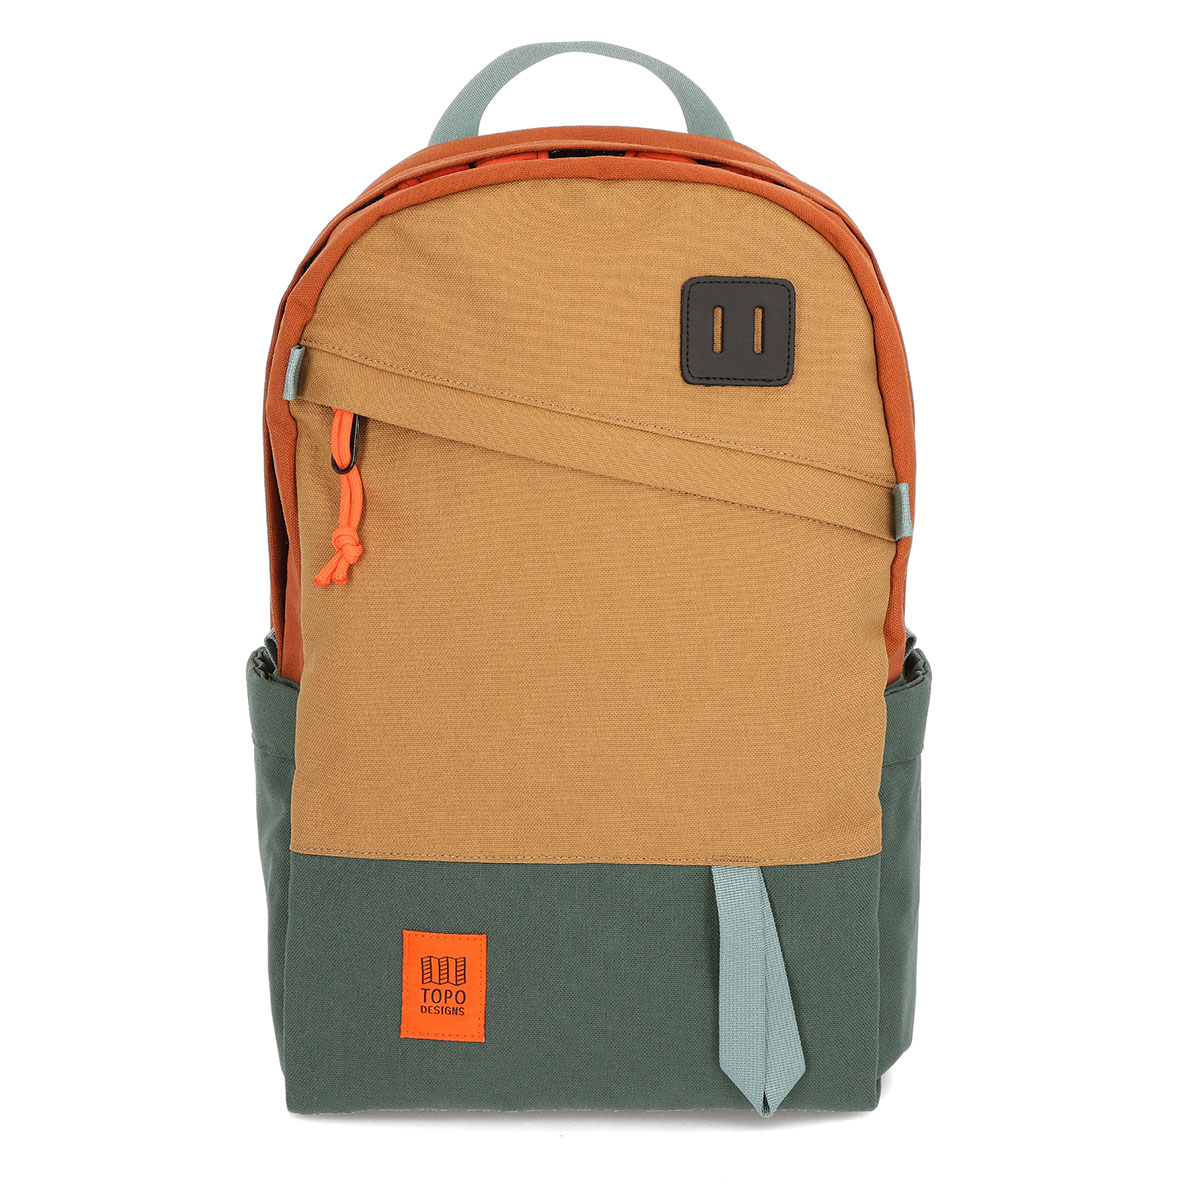 Topo Designs Daypack Classic Khaki/Forest/Clay, zeer sterke rugzak met klassieke uitstraling, uitermate geschikt voor dagelijks gebruik